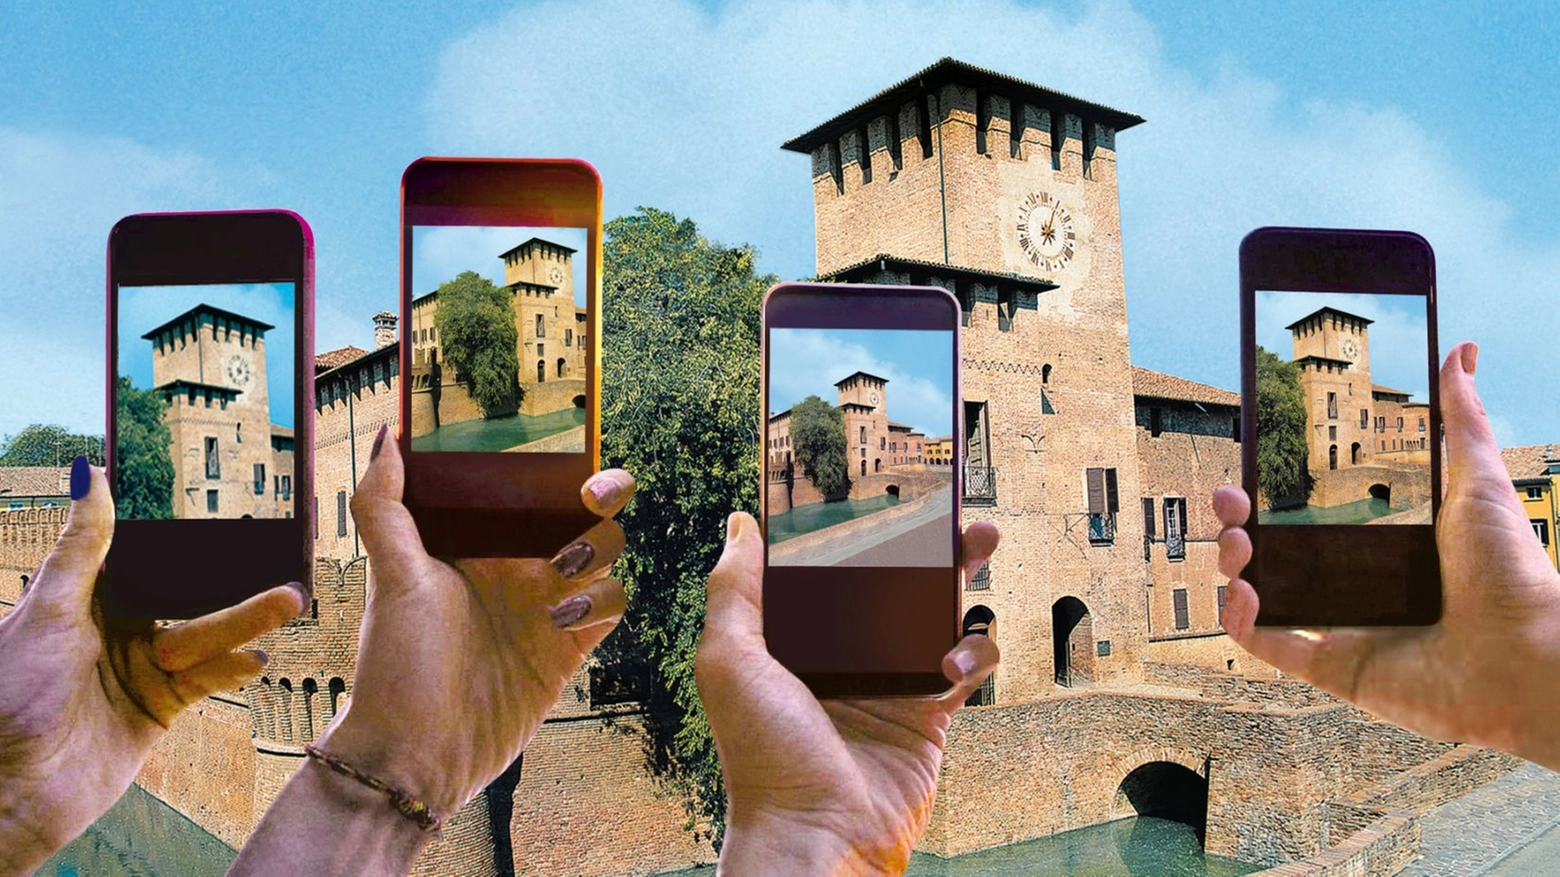 La sfida nei Castelli del Ducato e nei Borghi delle province di Piacenza, Parma, Reggio Emilia: tutti possono partecipare